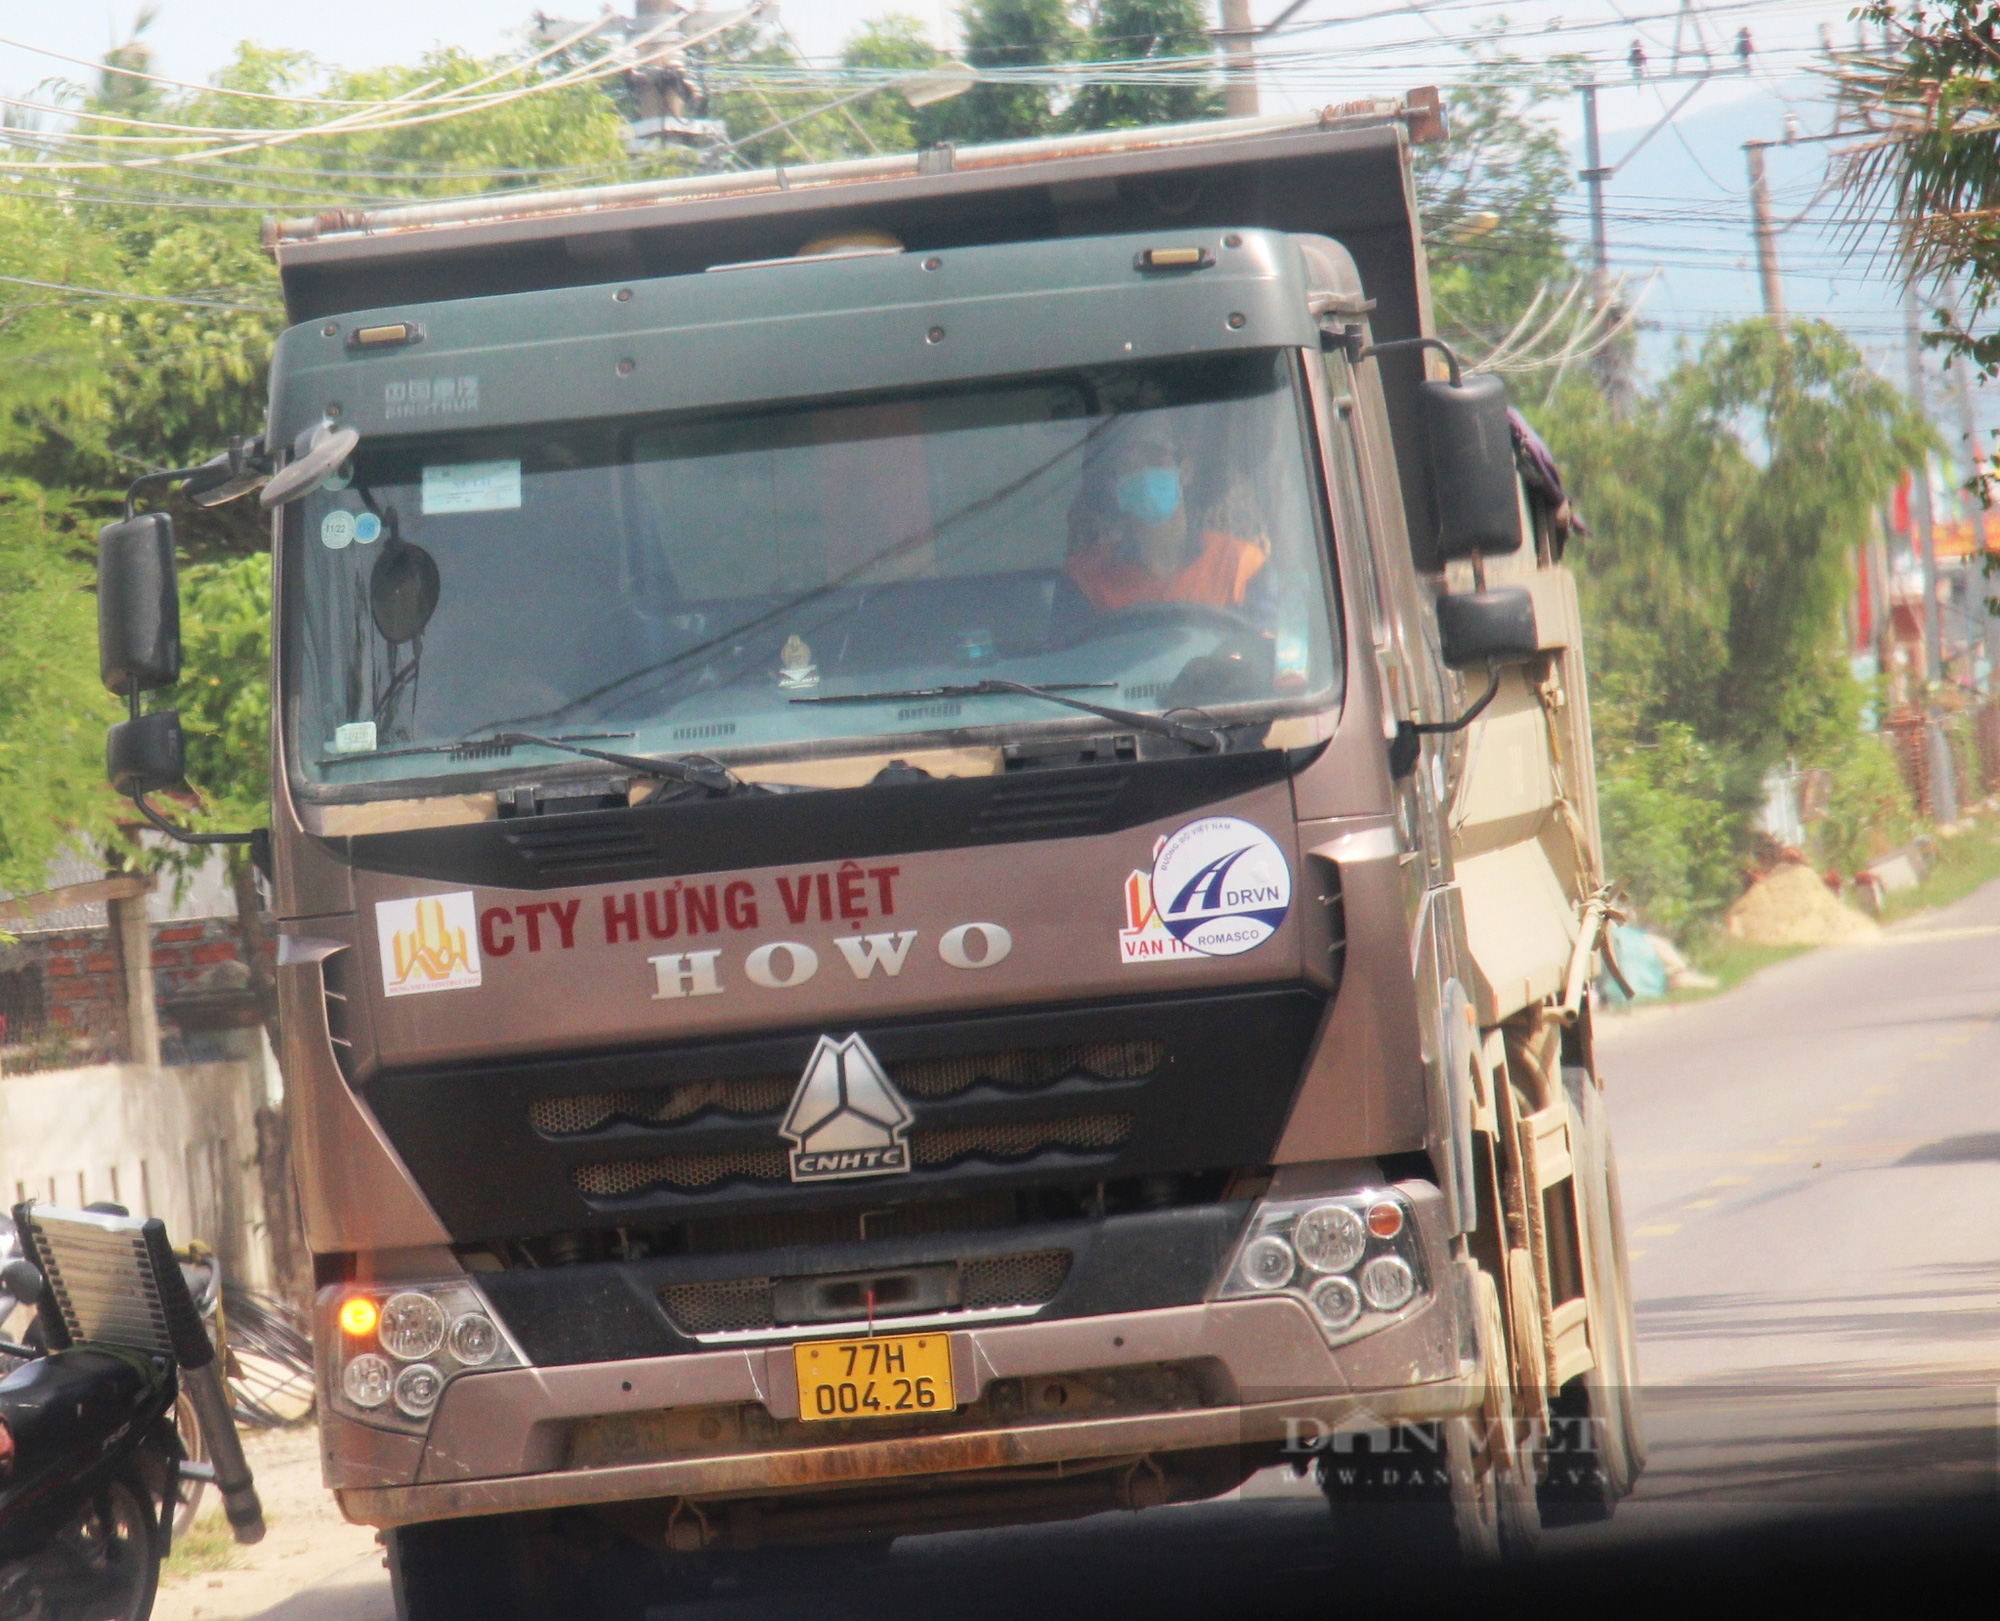 Đoàn xe “siêu tải” logo Hưng Việt cơi nới thành thùng, nghênh ngang cày xéo cung đường ở Bình Định  - Ảnh 5.